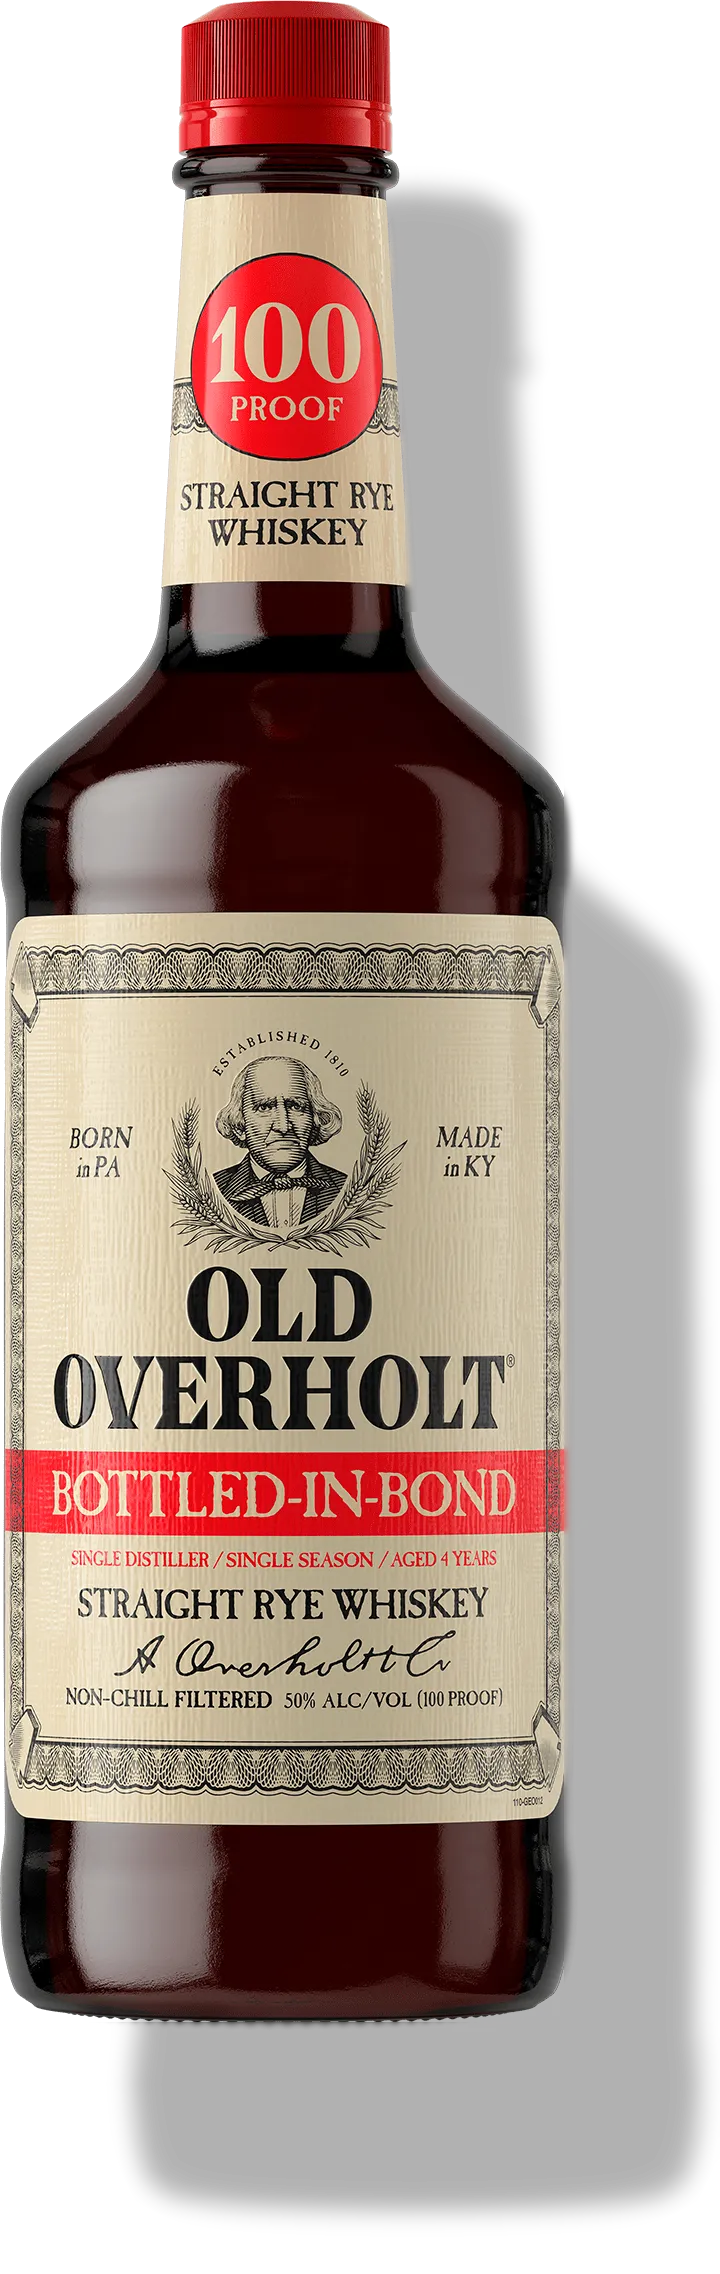 Overholt bottle, whiskey bottle, American whiskey